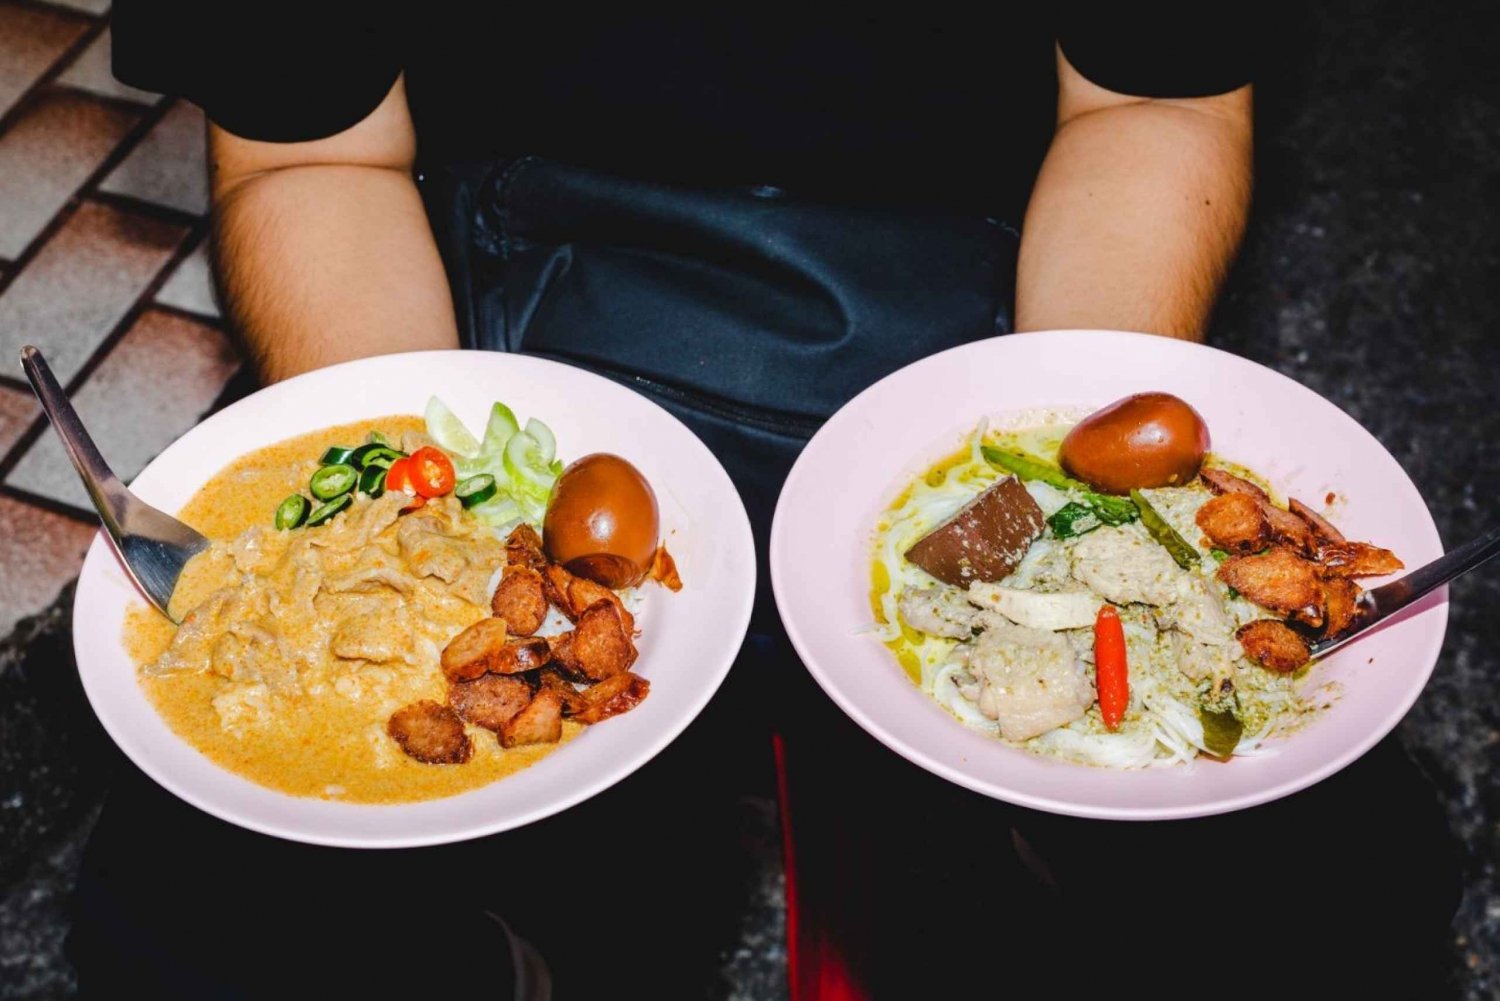 Bangkok: Recorrido gastronómico por las callejuelas con más de 15 degustaciones